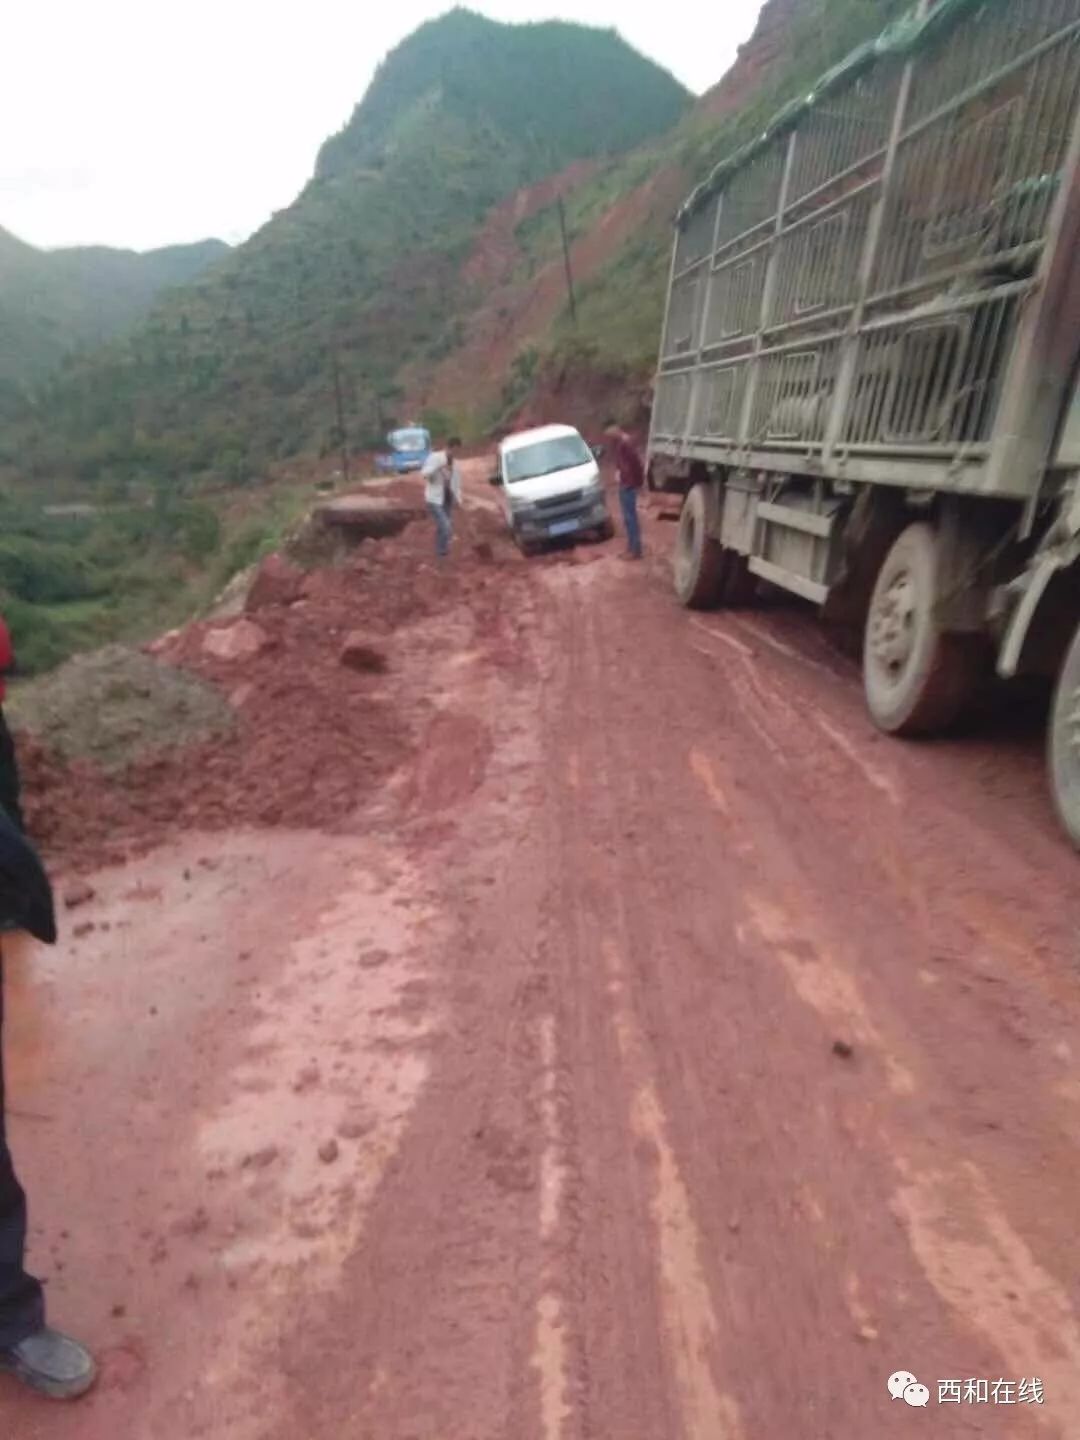 汽车  来源:mr lu 最近西和雨水天气不断,洛峪镇羊马城路段路面塌陷